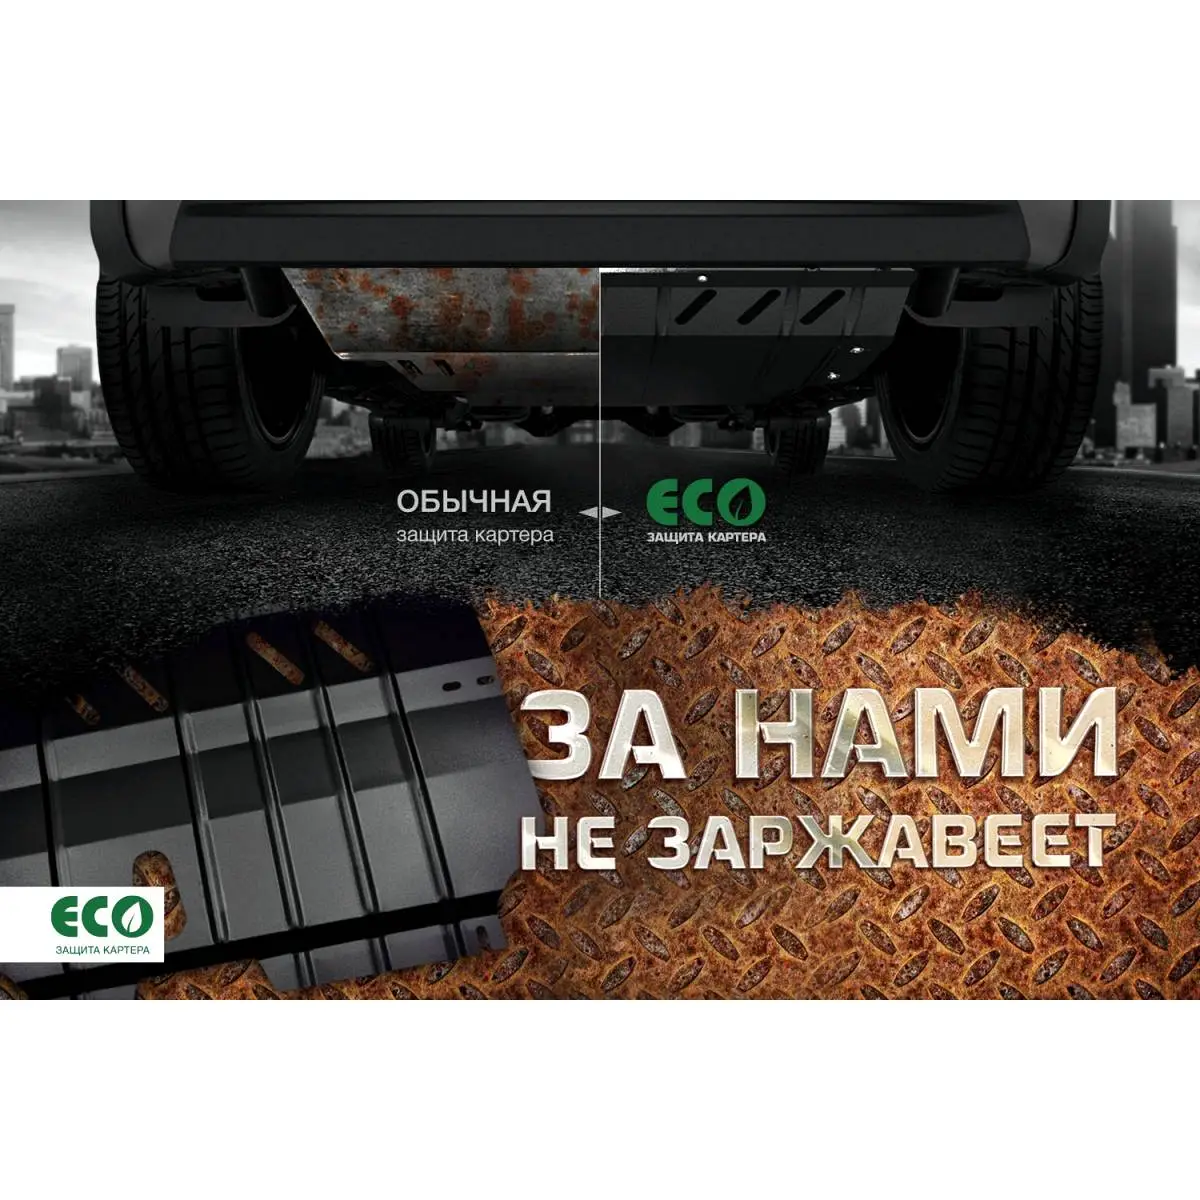 Комплект крепежа защиты радиатора Eco H0I9 LR eco9903322 E1OKY 1437099151 изображение 6